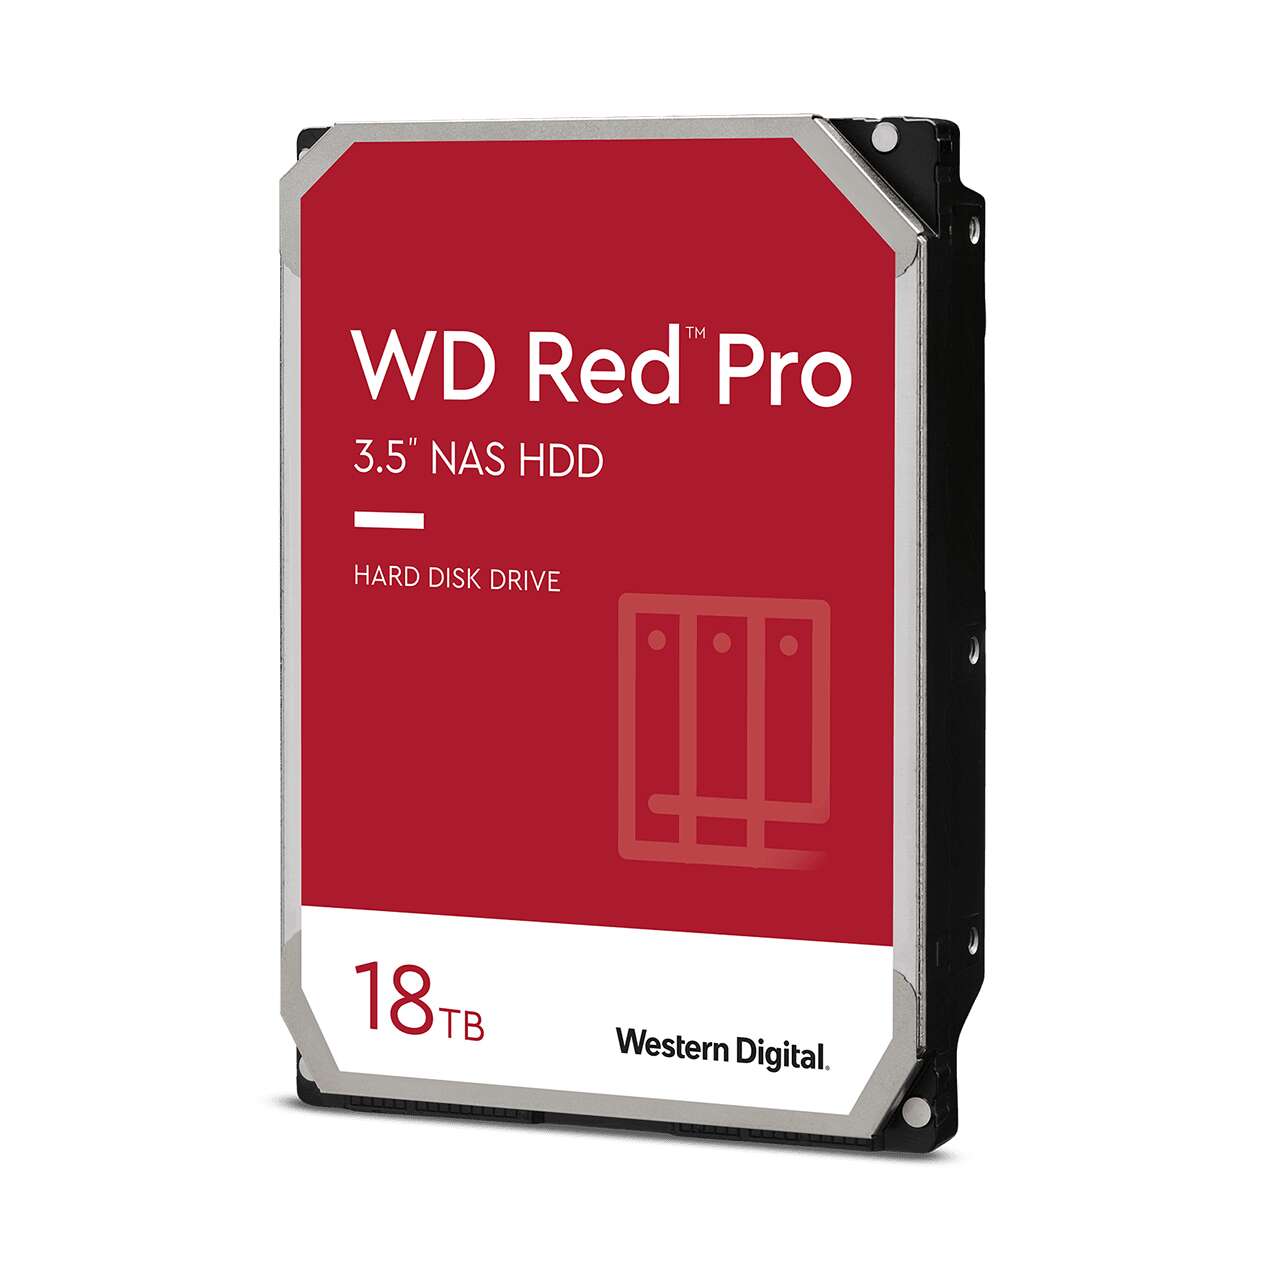 Western digital 18tb red pro sata3 3.5" nas hdd